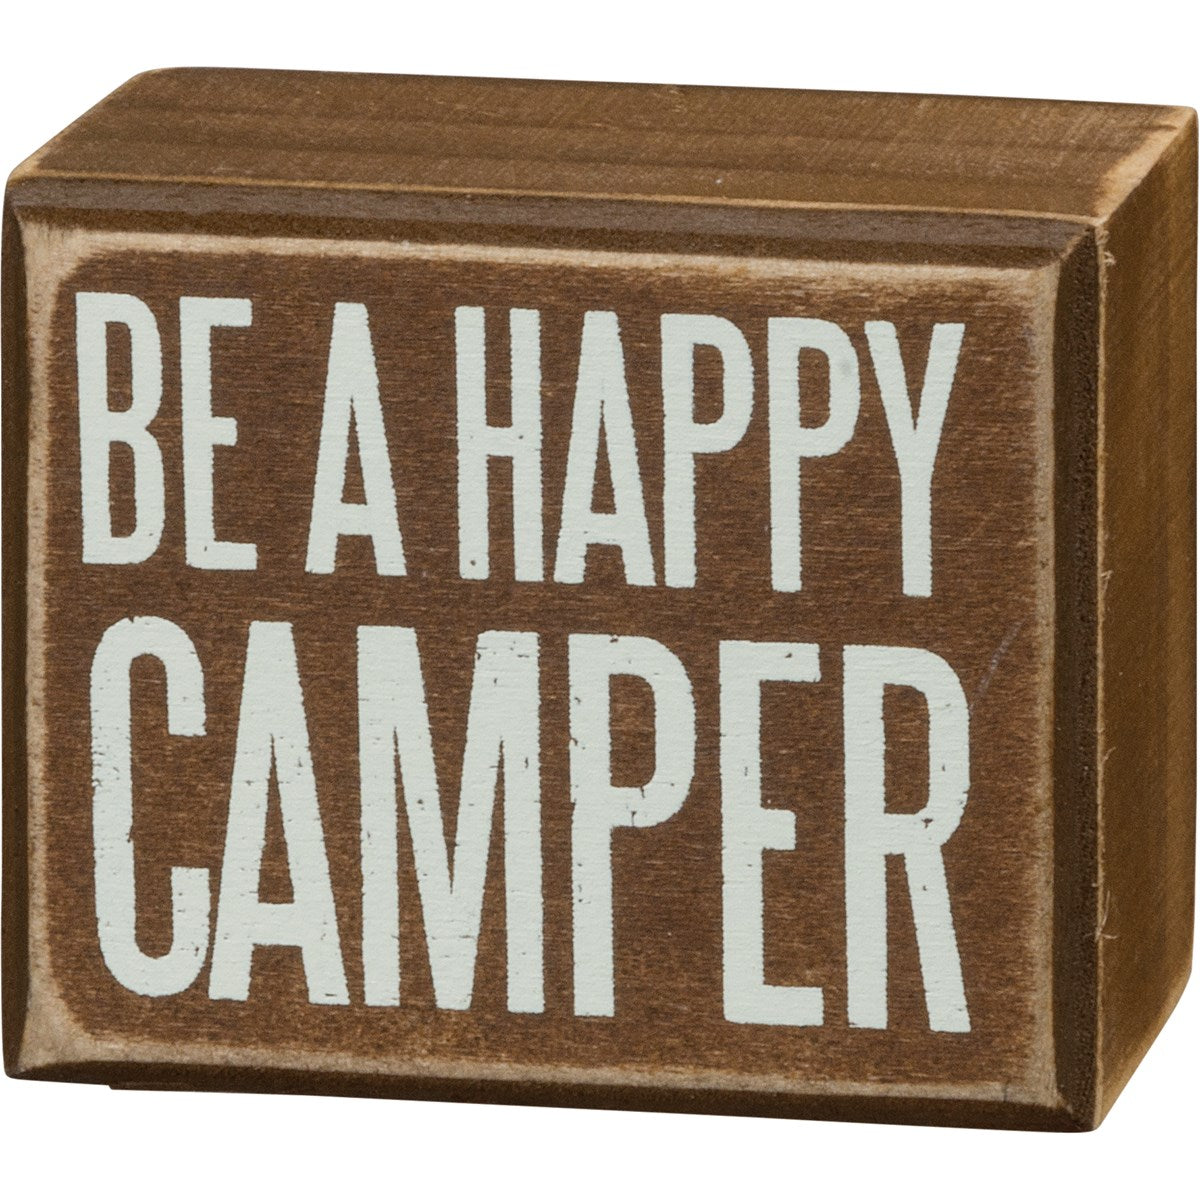 Be a happy camper